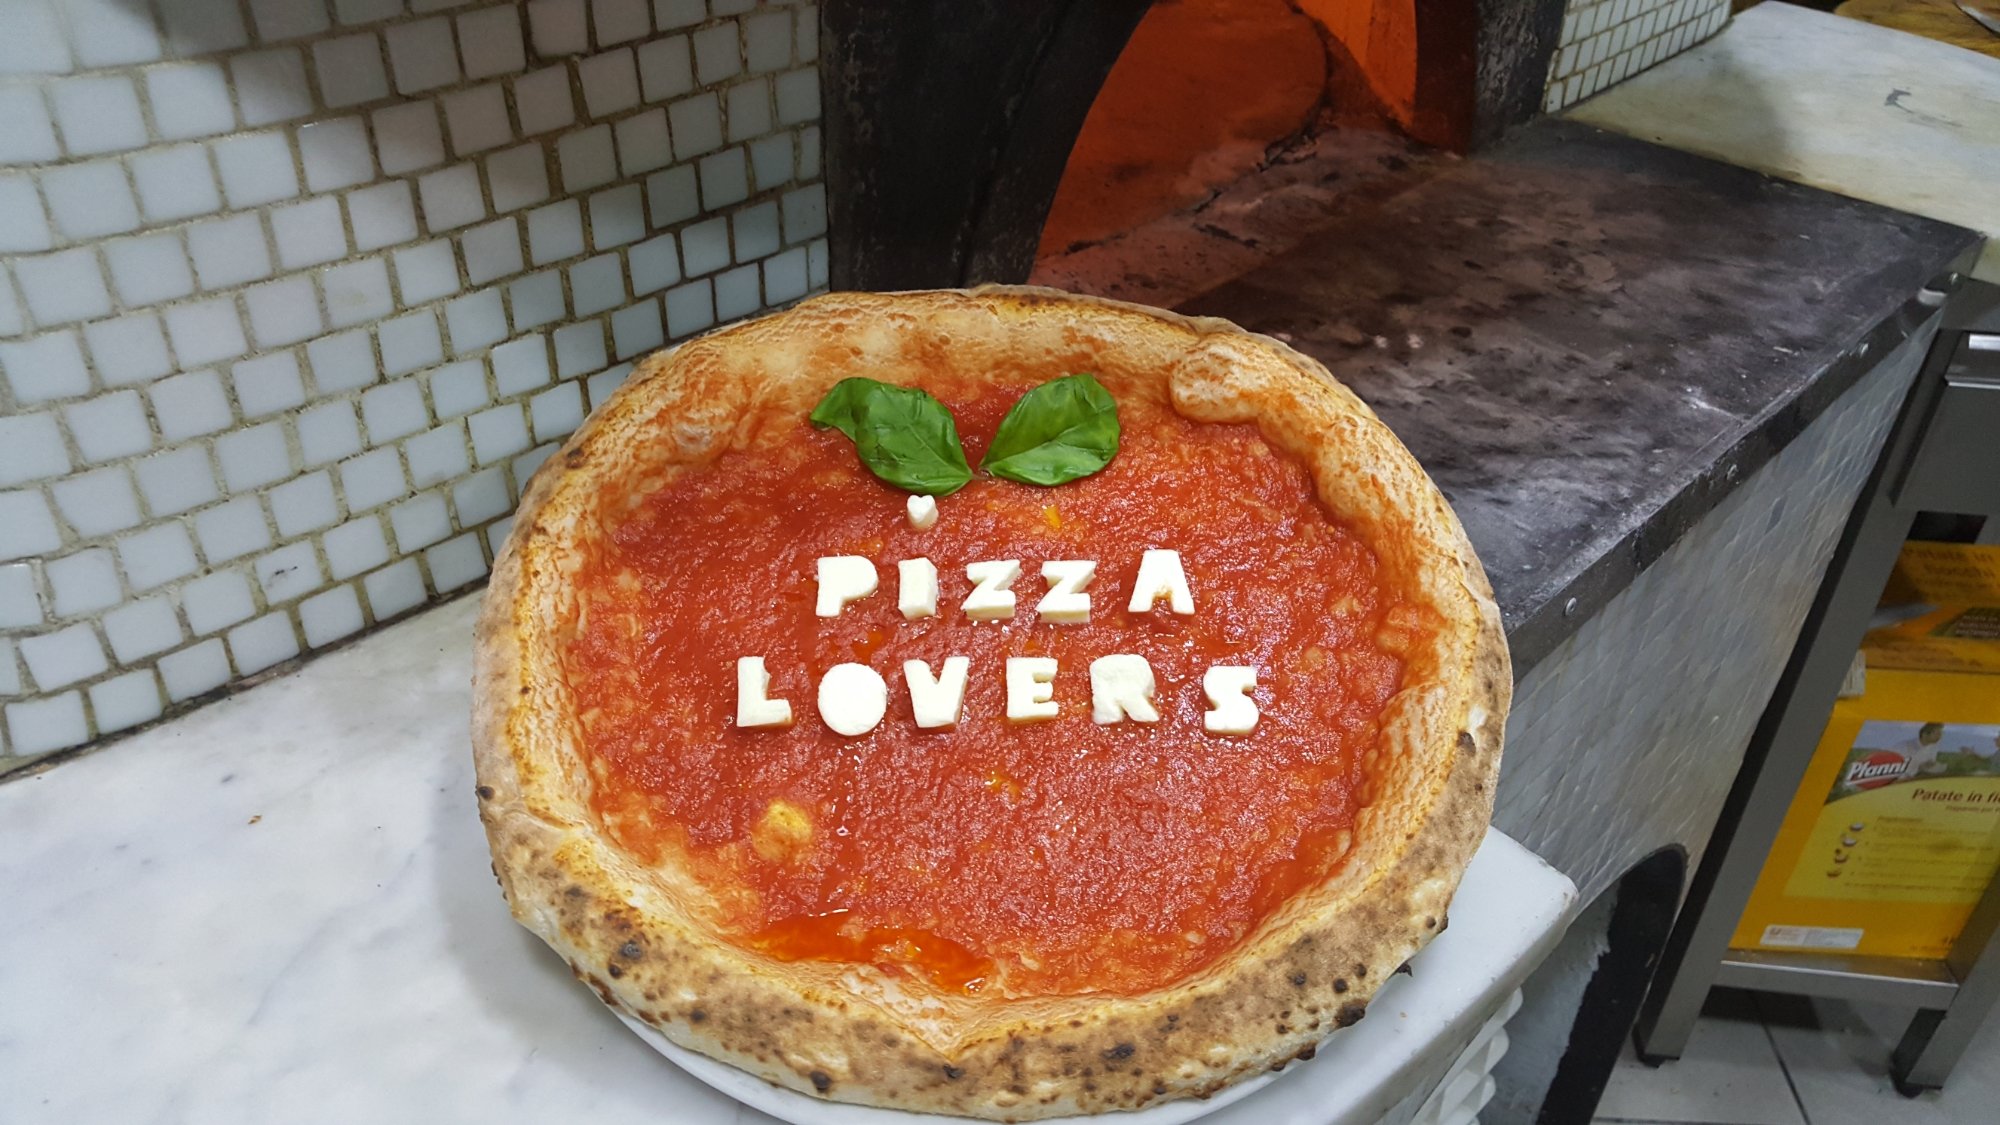 Pizza Lovers Addu Maurizio, Napoli